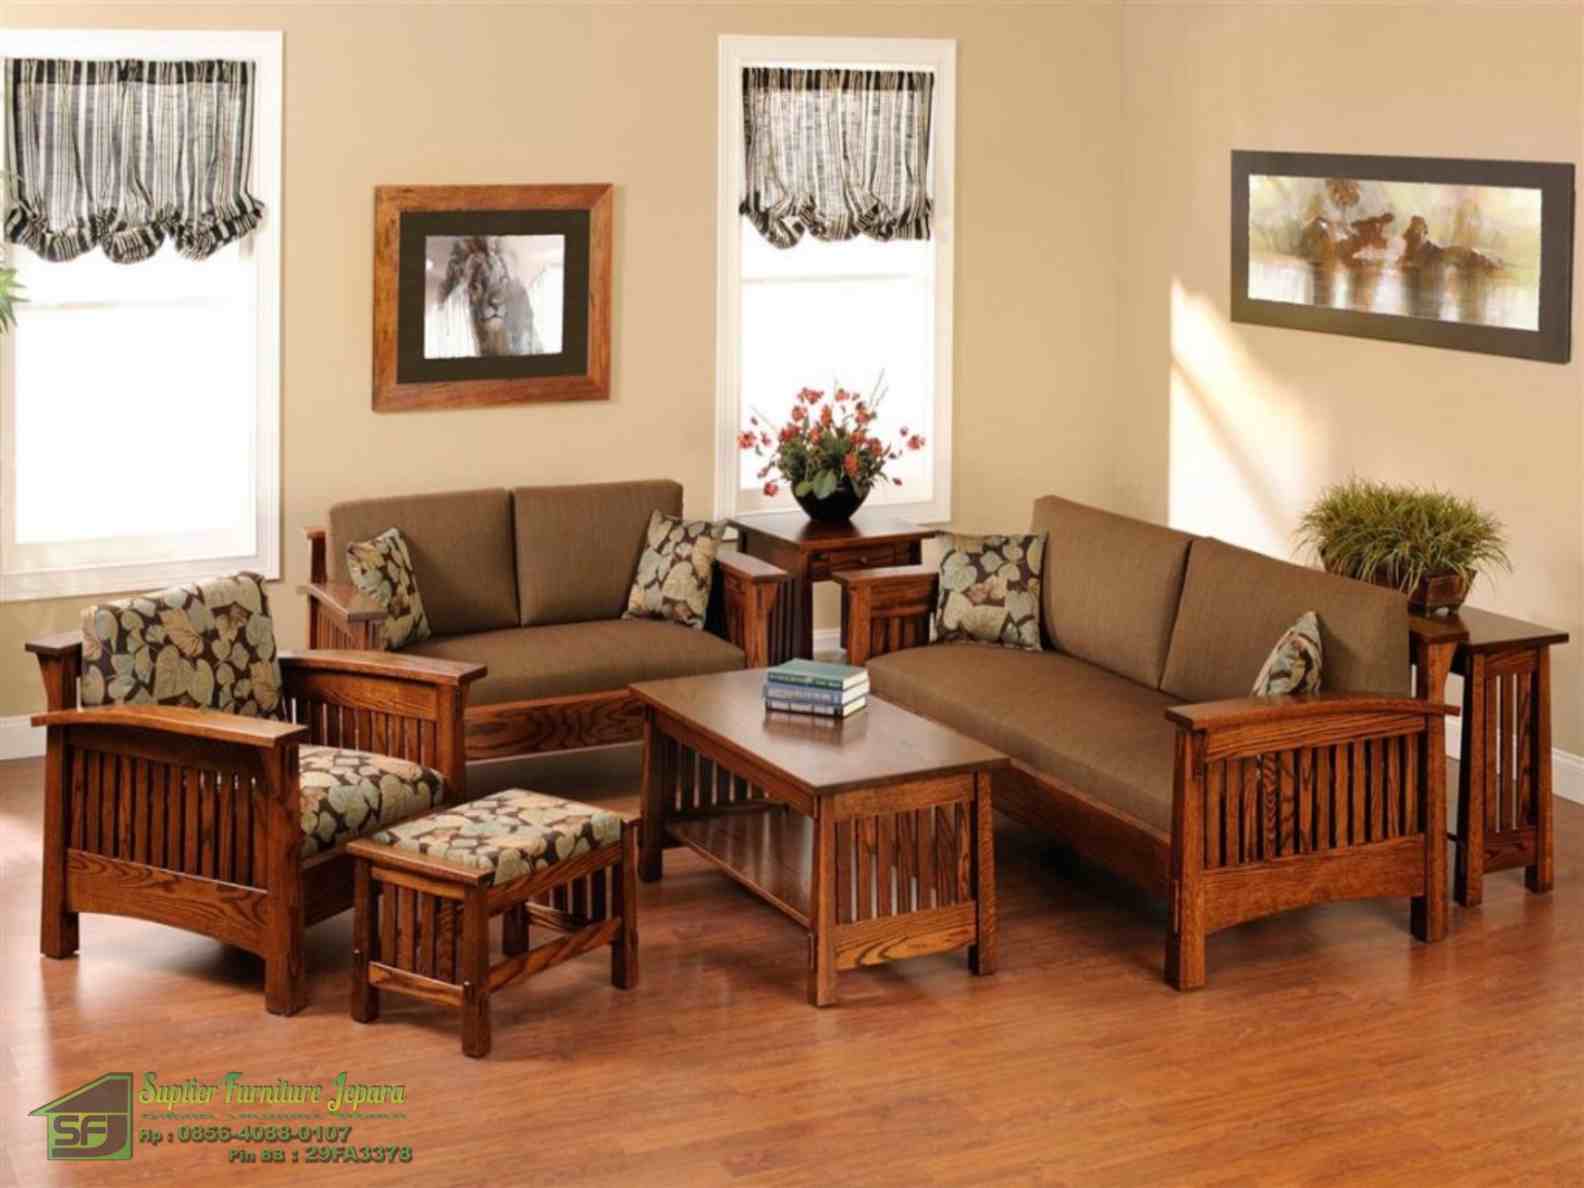 Desain Interior Ruang Tamu Minimalis Tanpa Sofa | Contoh Desain Interior Ruang Tamu Minimalis 3×3